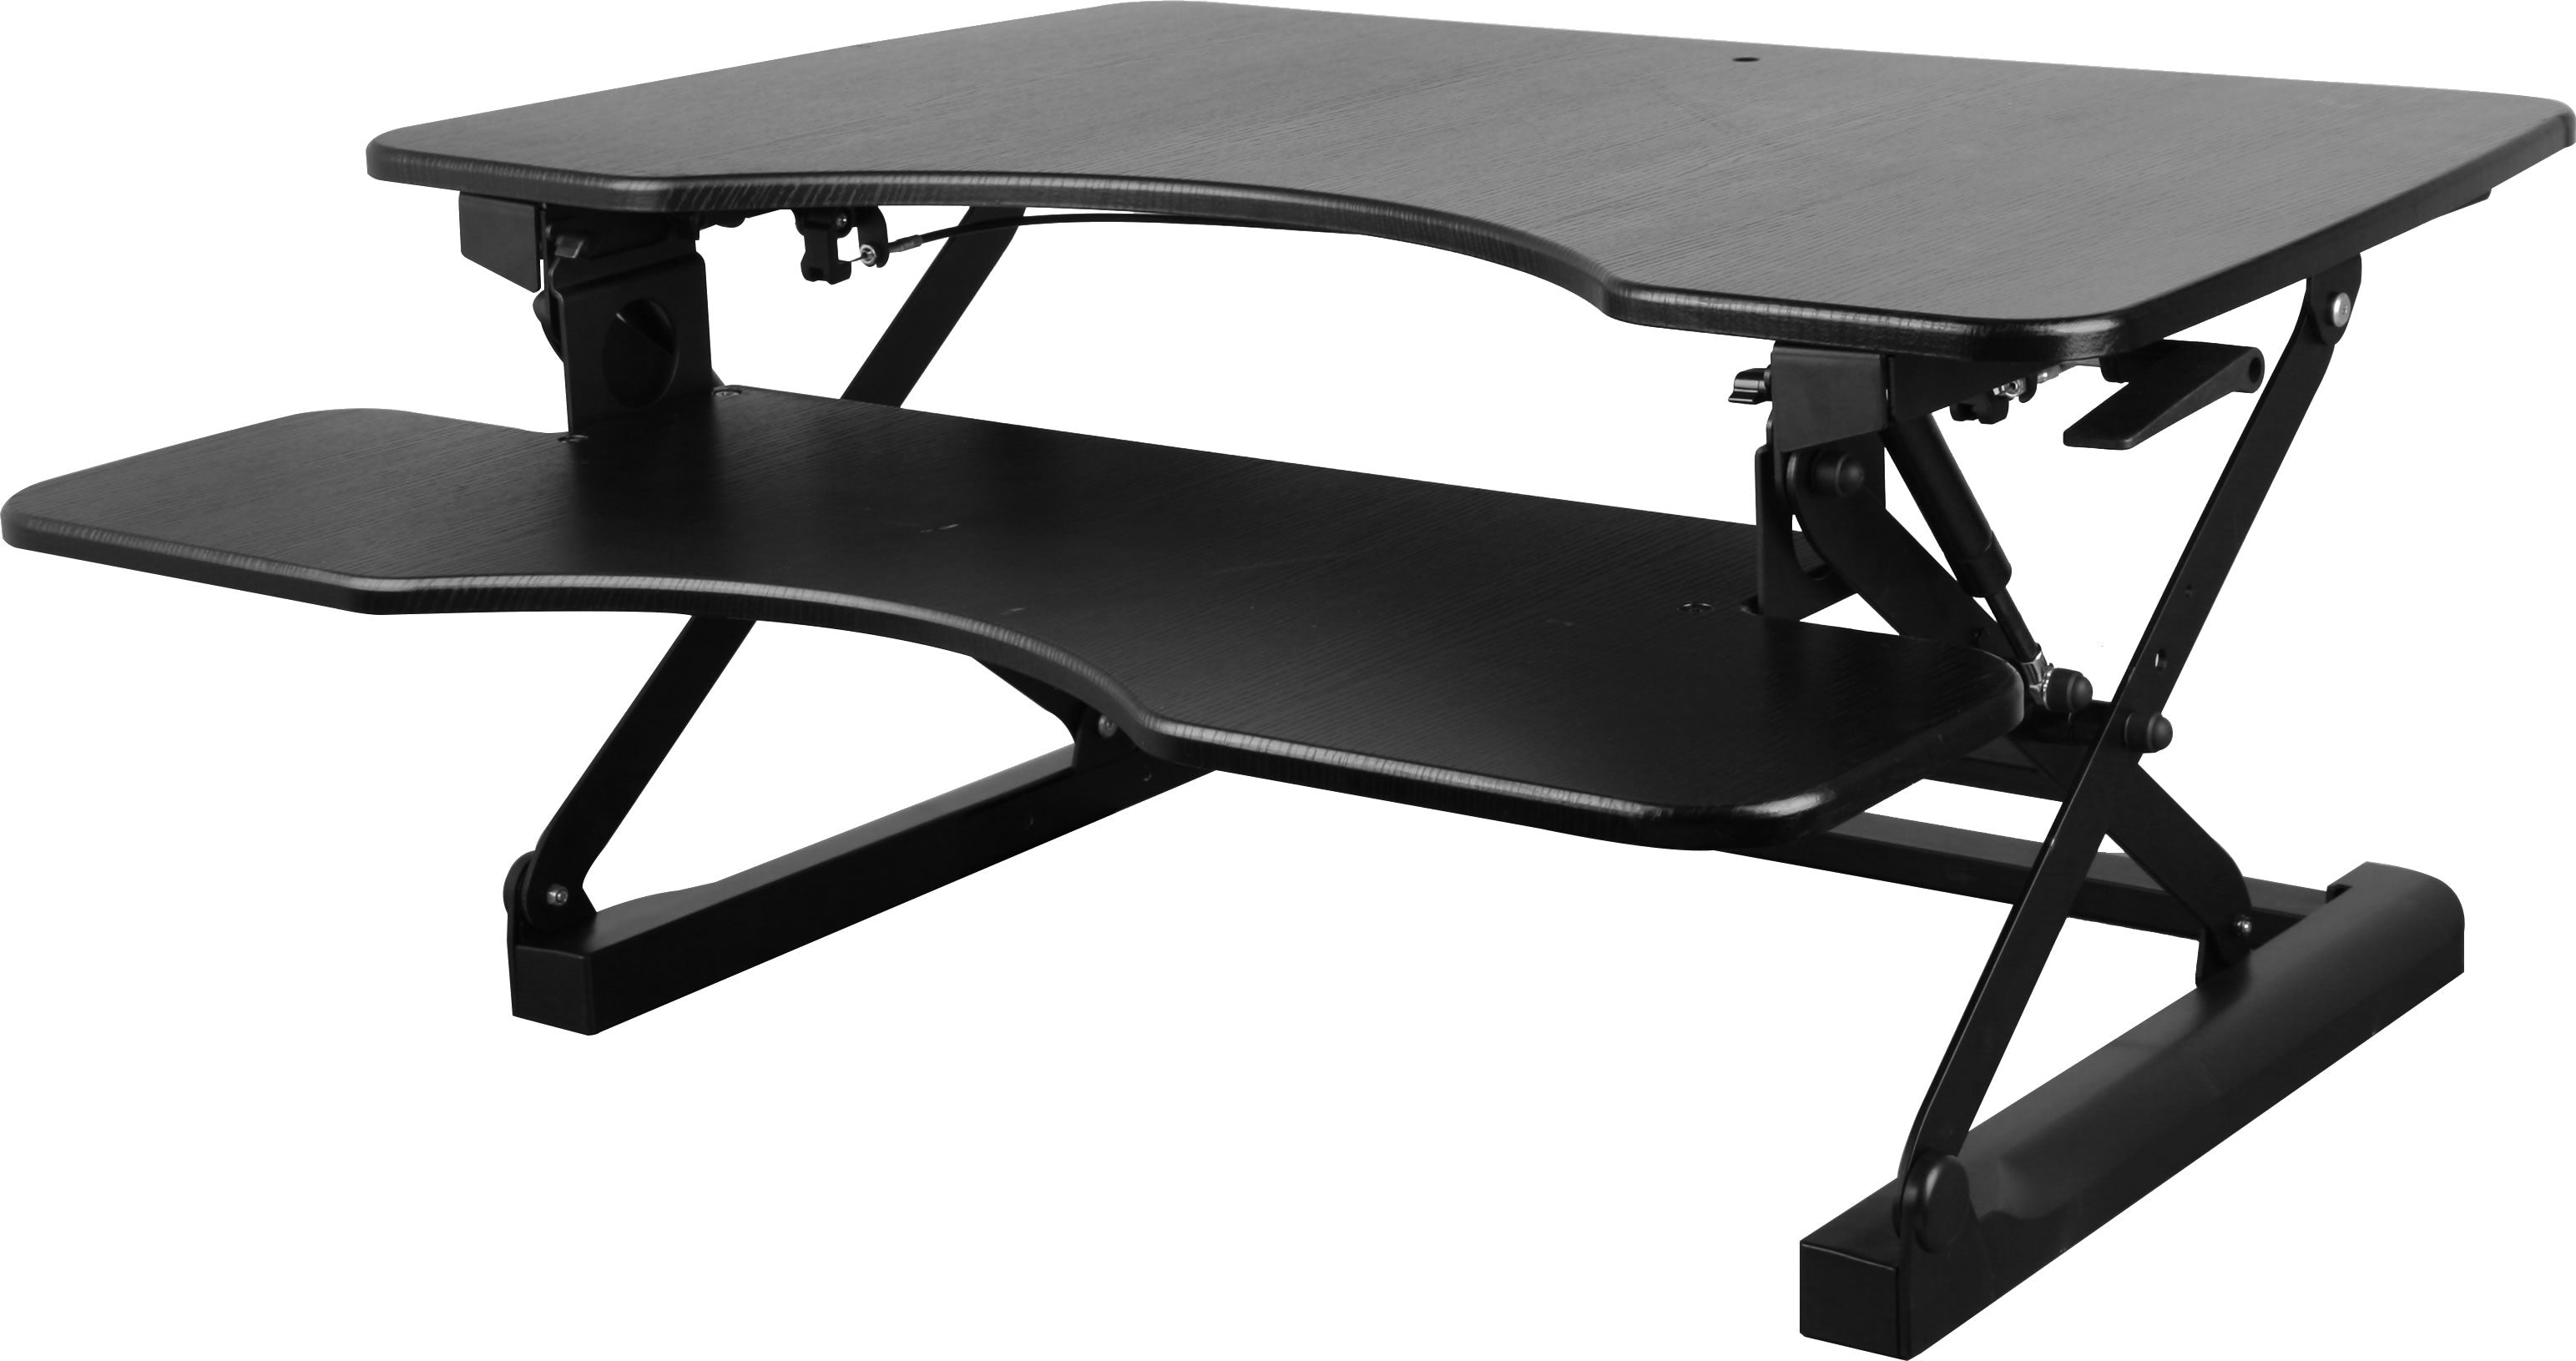 64-1310 Adjustable Height Standing Desk - Stand Up Desk Riser